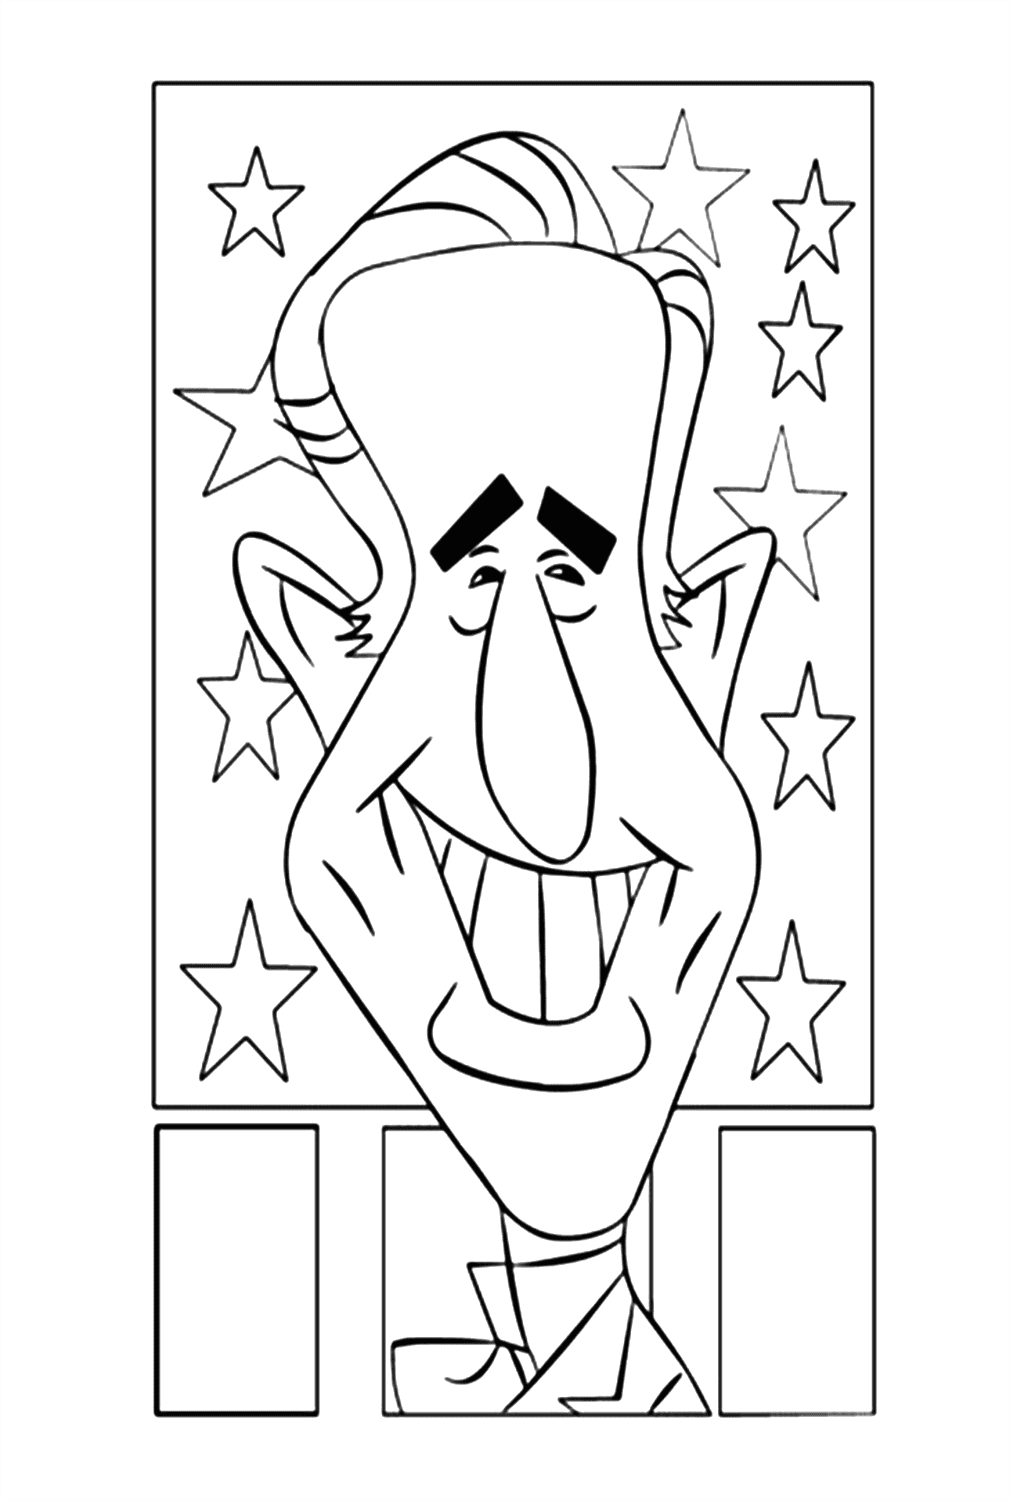 Desenho para colorir do riso de Joe Biden